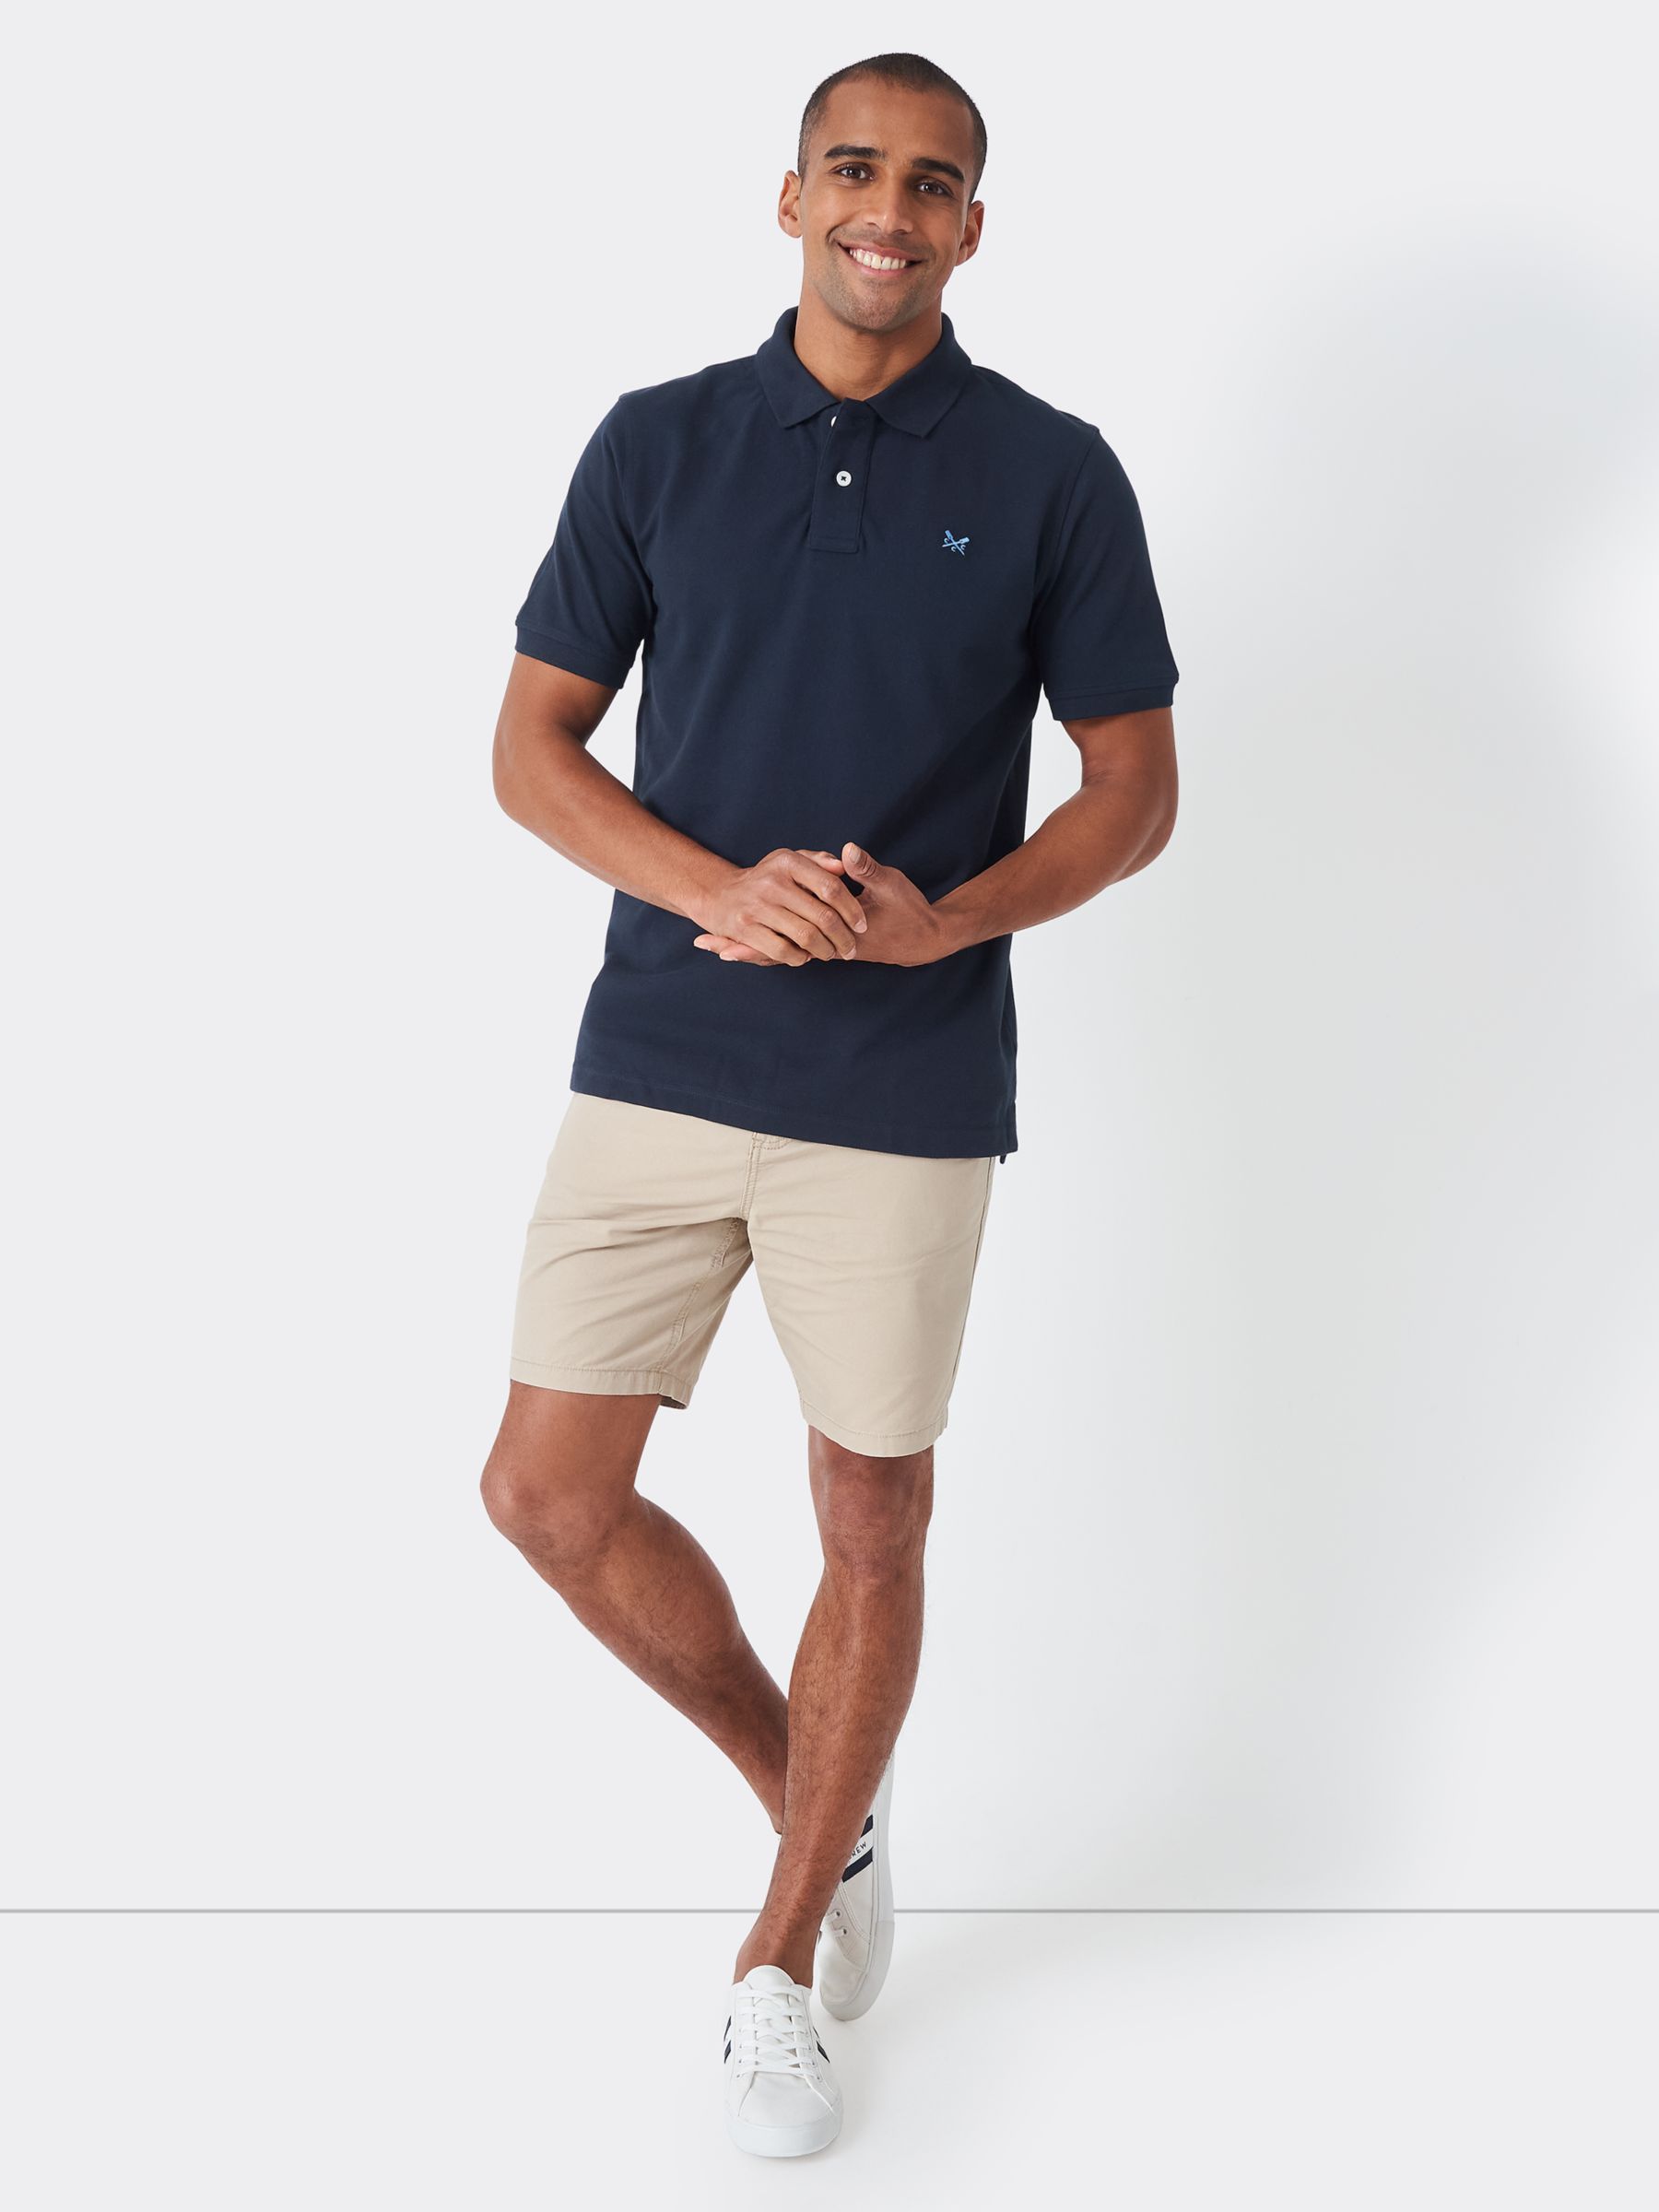 Crew Clothing Ocean Organic Cotton Pique Short Sleeve Polo Top, Navy, XS